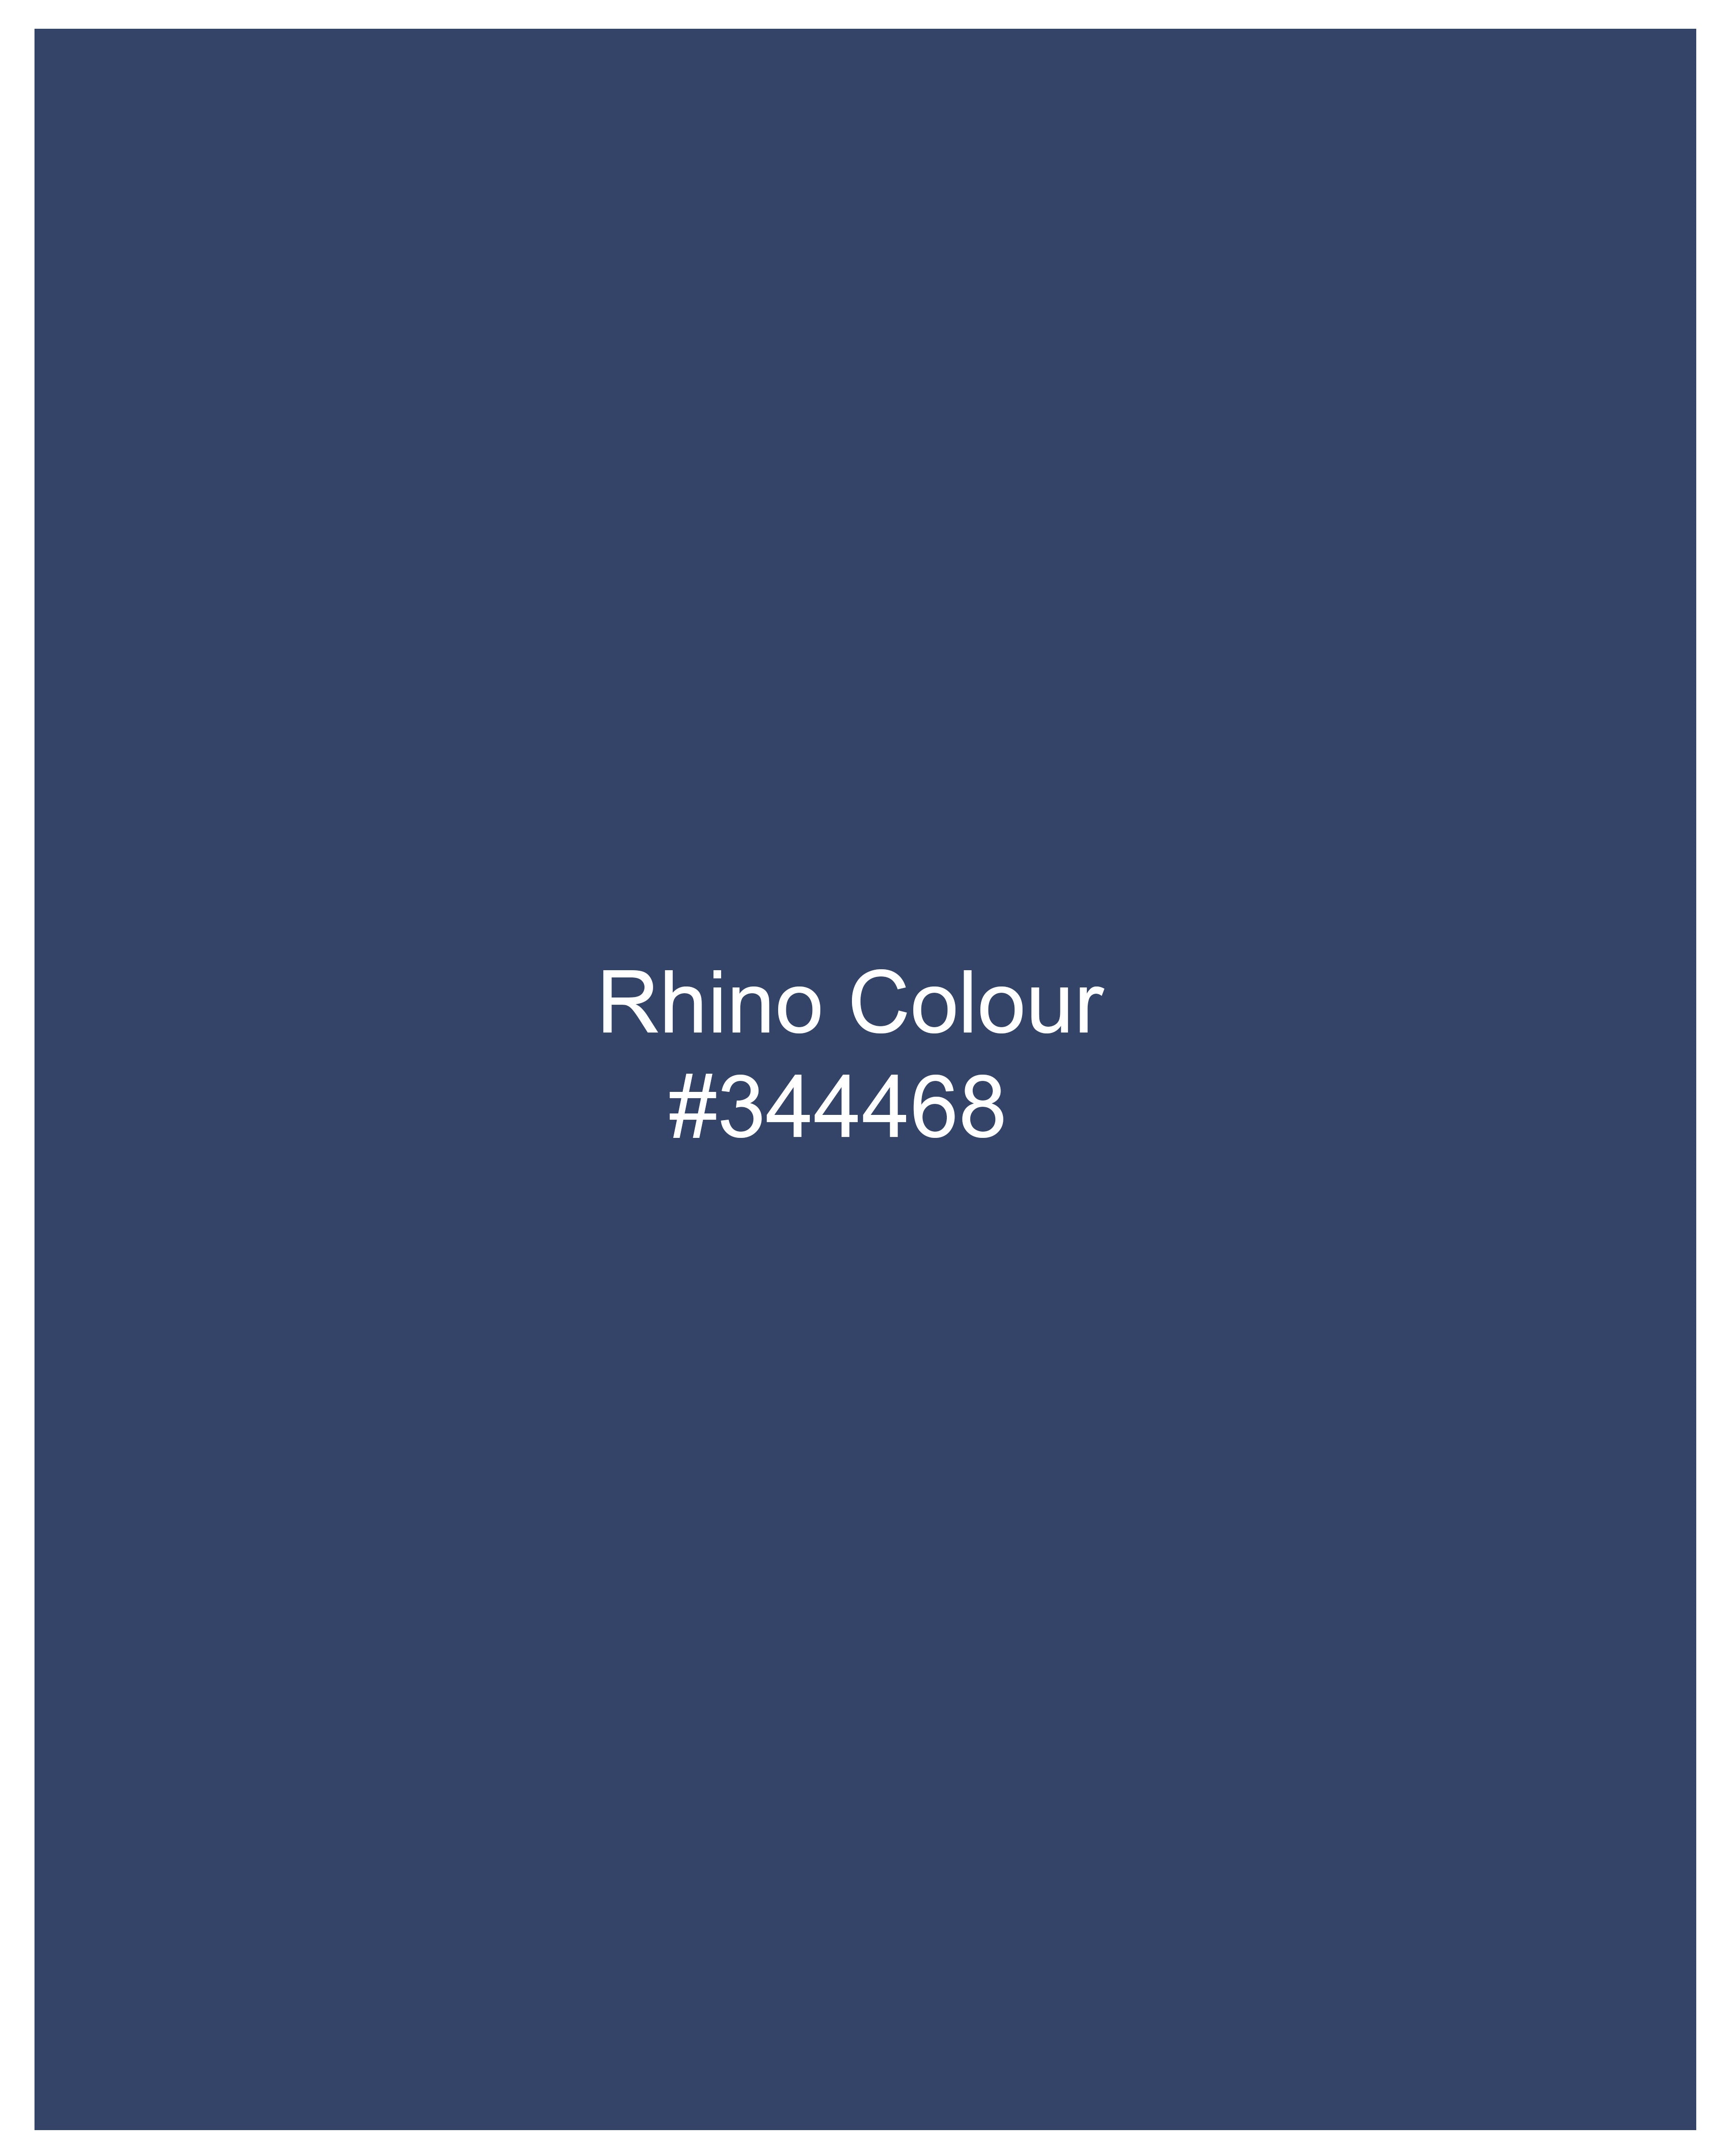 Rhino Blue Hand Sanding Stretchable Denim J180-32, J180-34, J180-36, J180-38, J180-40